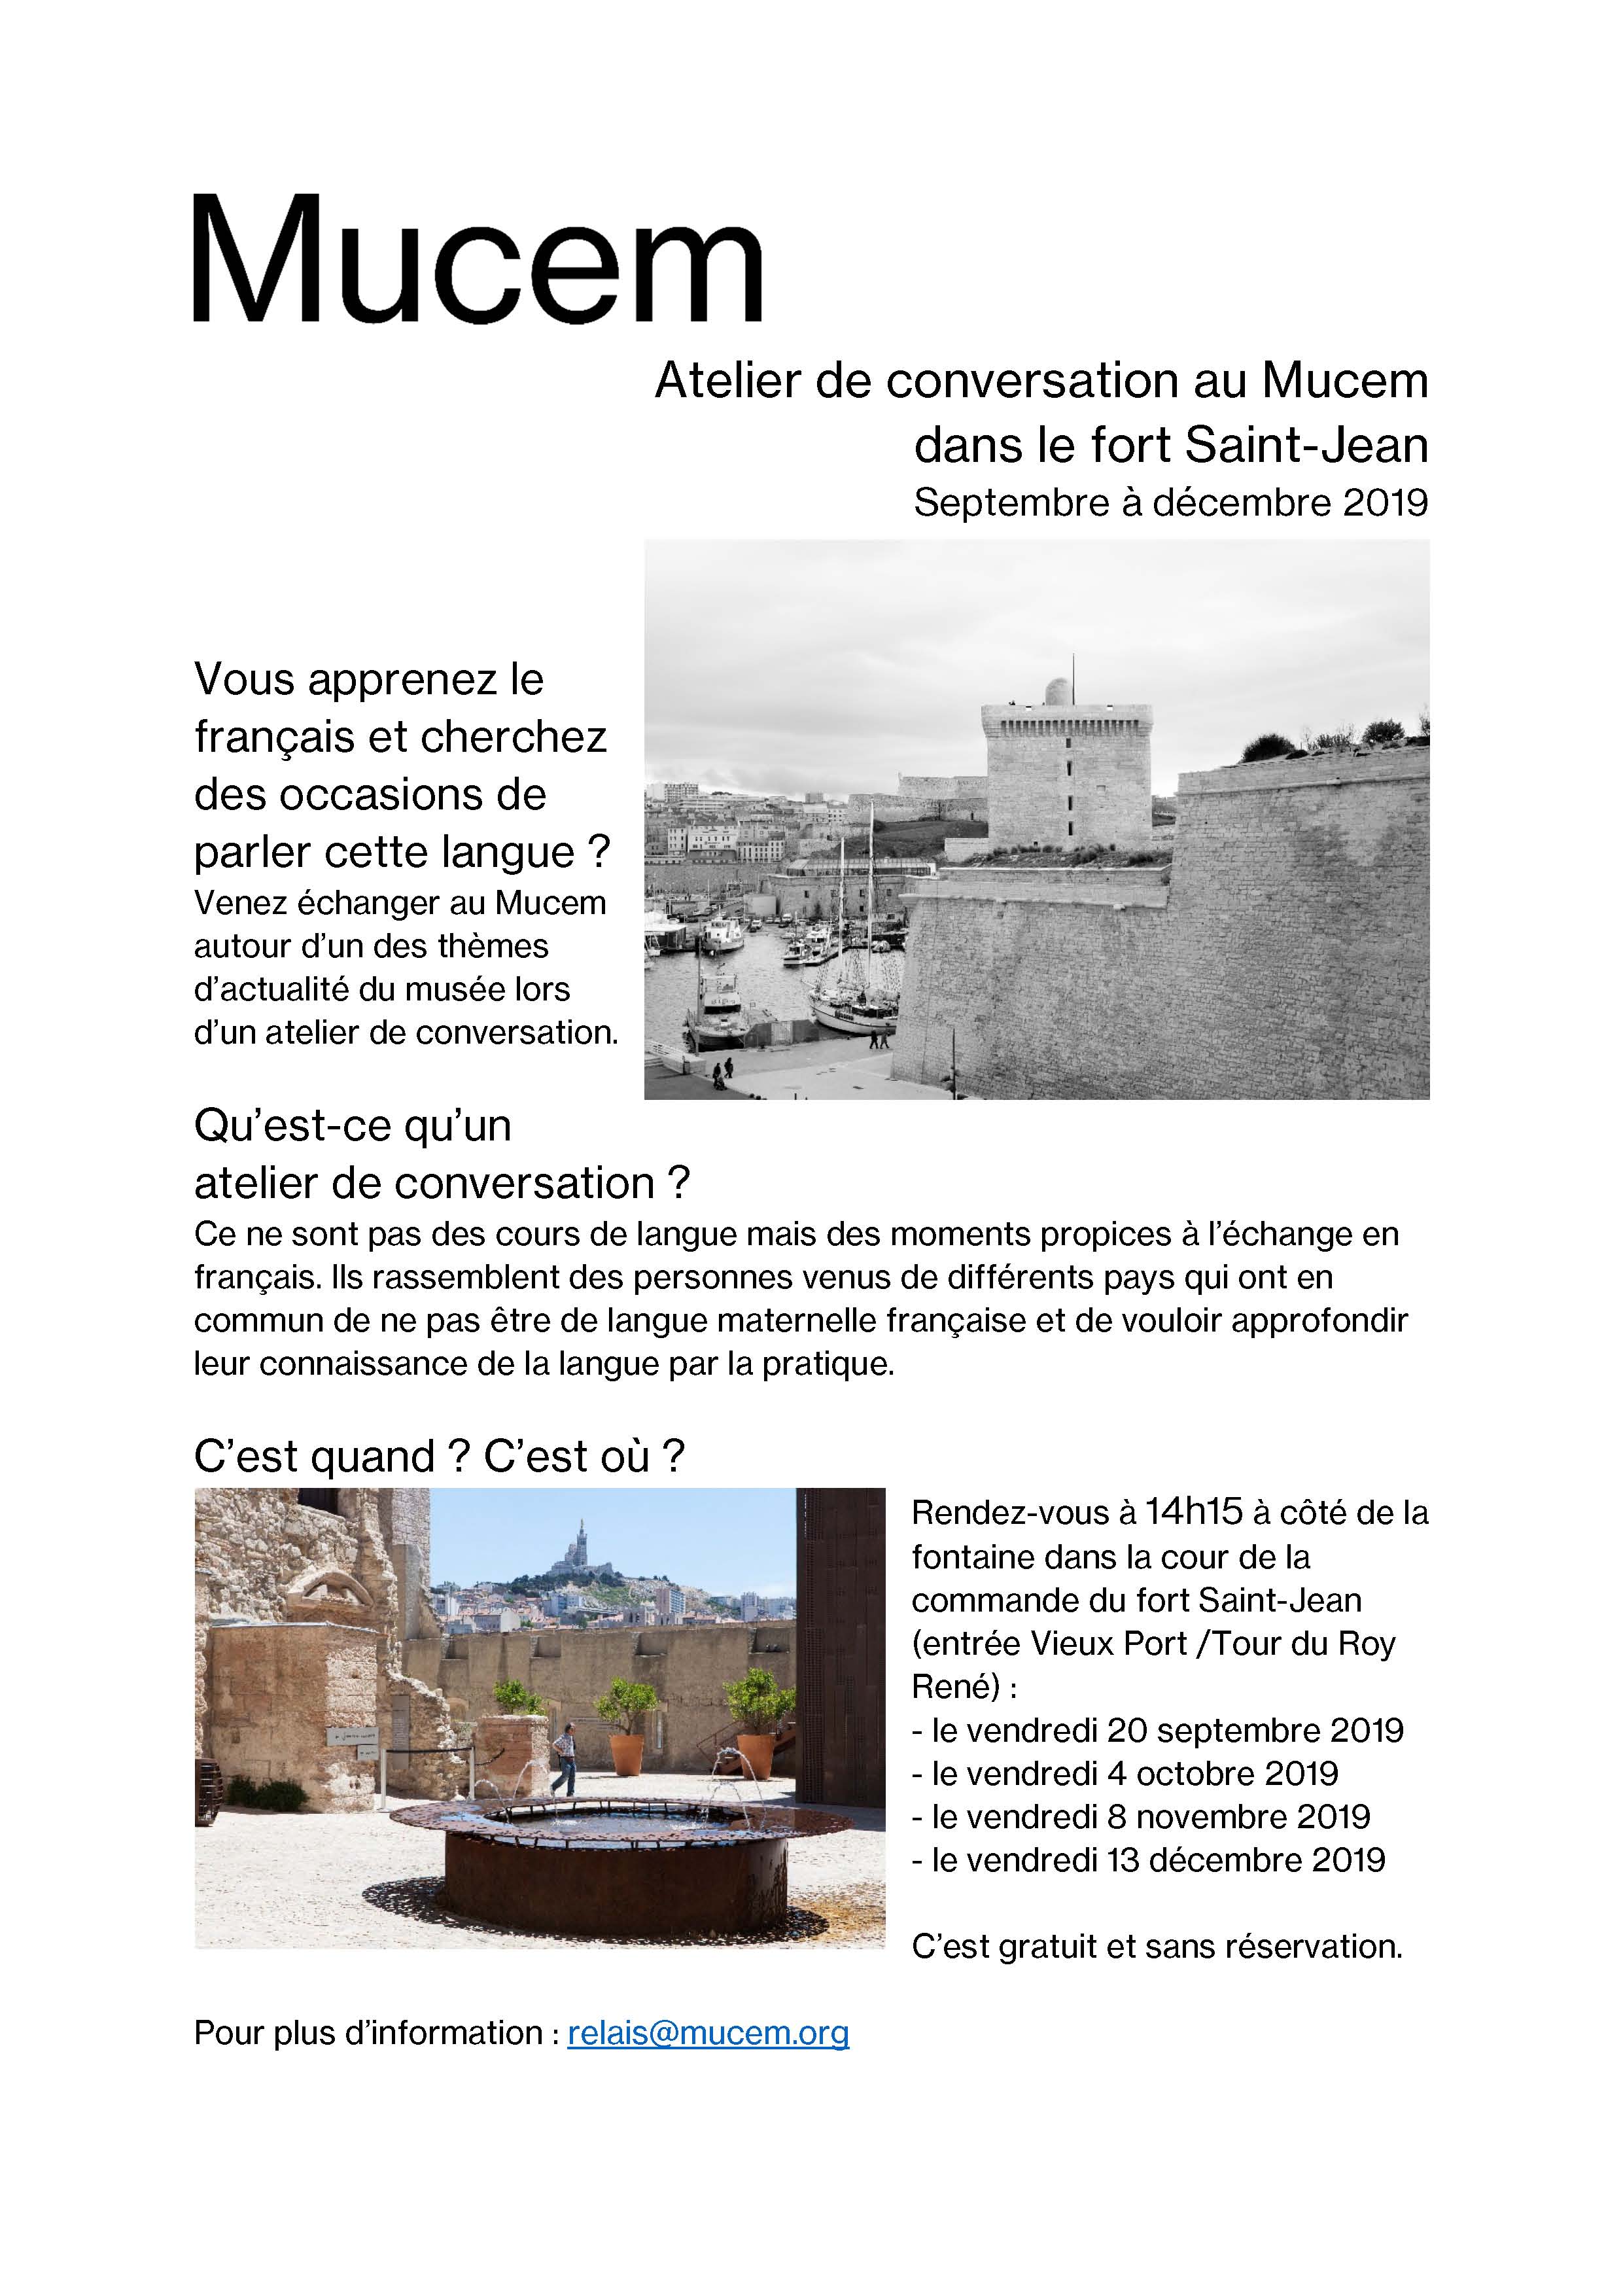 MUCEM : Ateliers de conversation au Mucem dans le fort Saint-Jean